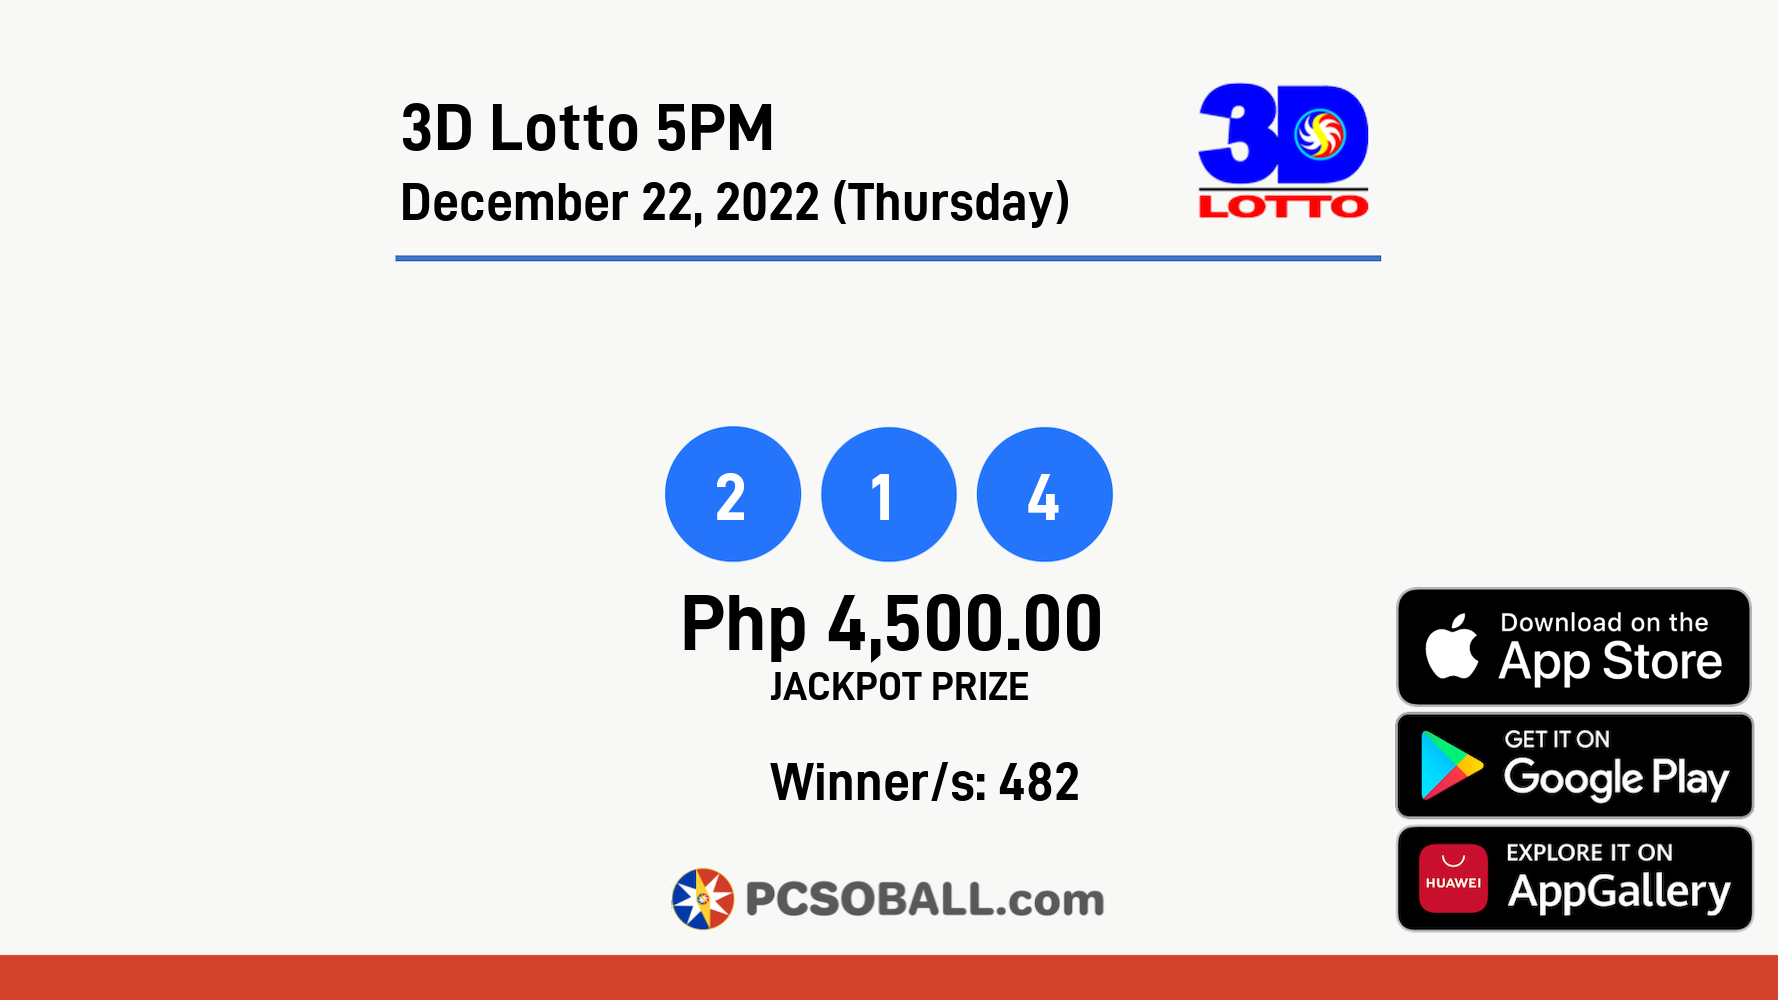 3D Lotto 5PM December 22, 2022 (Thursday) Result